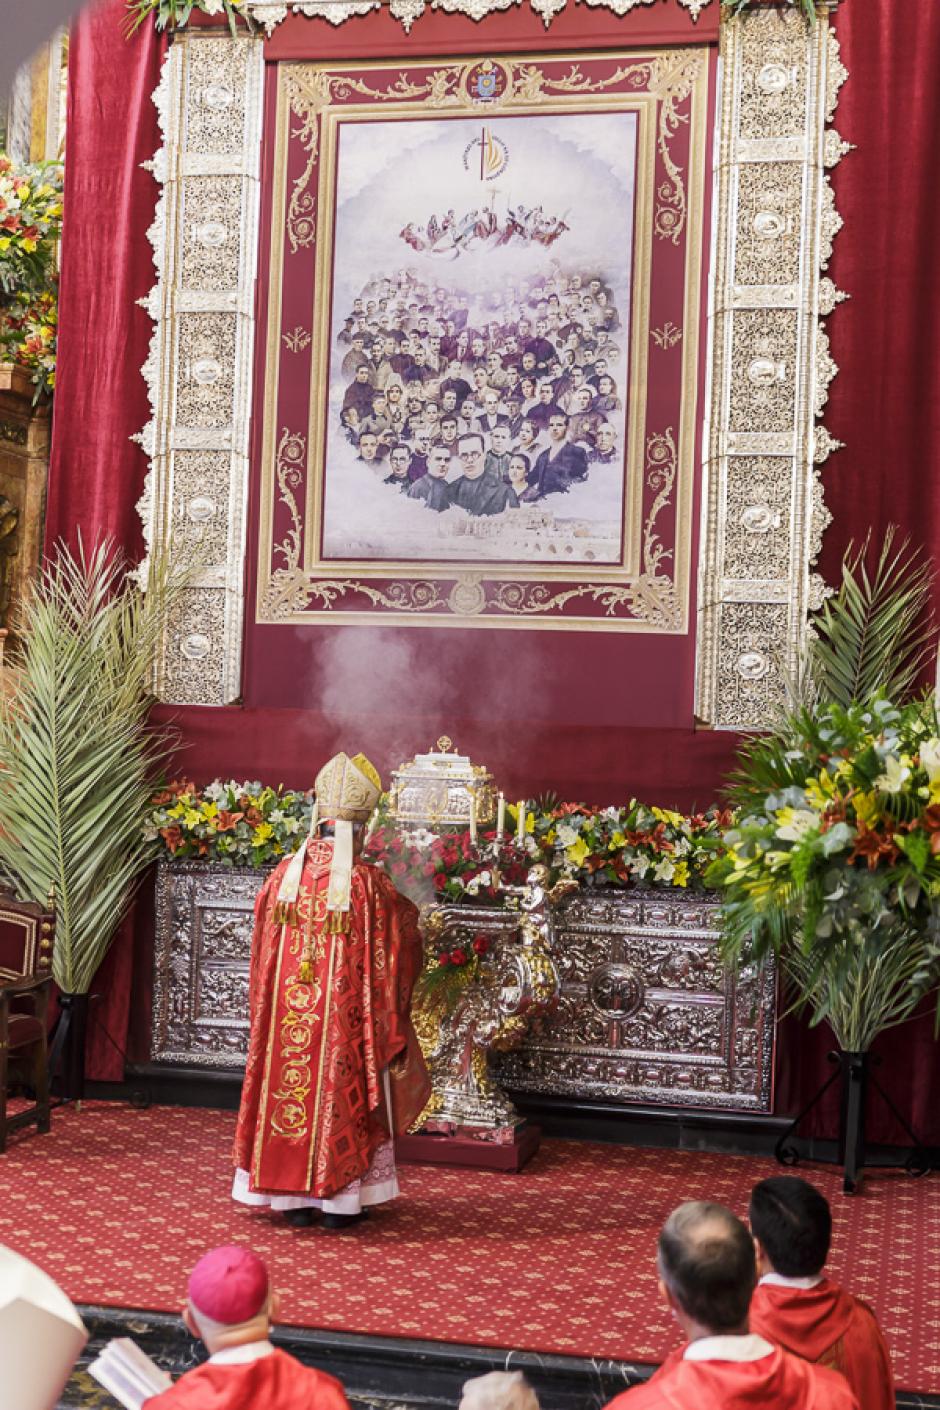 El obispo de Córdoba incensando el relicario de los mártires